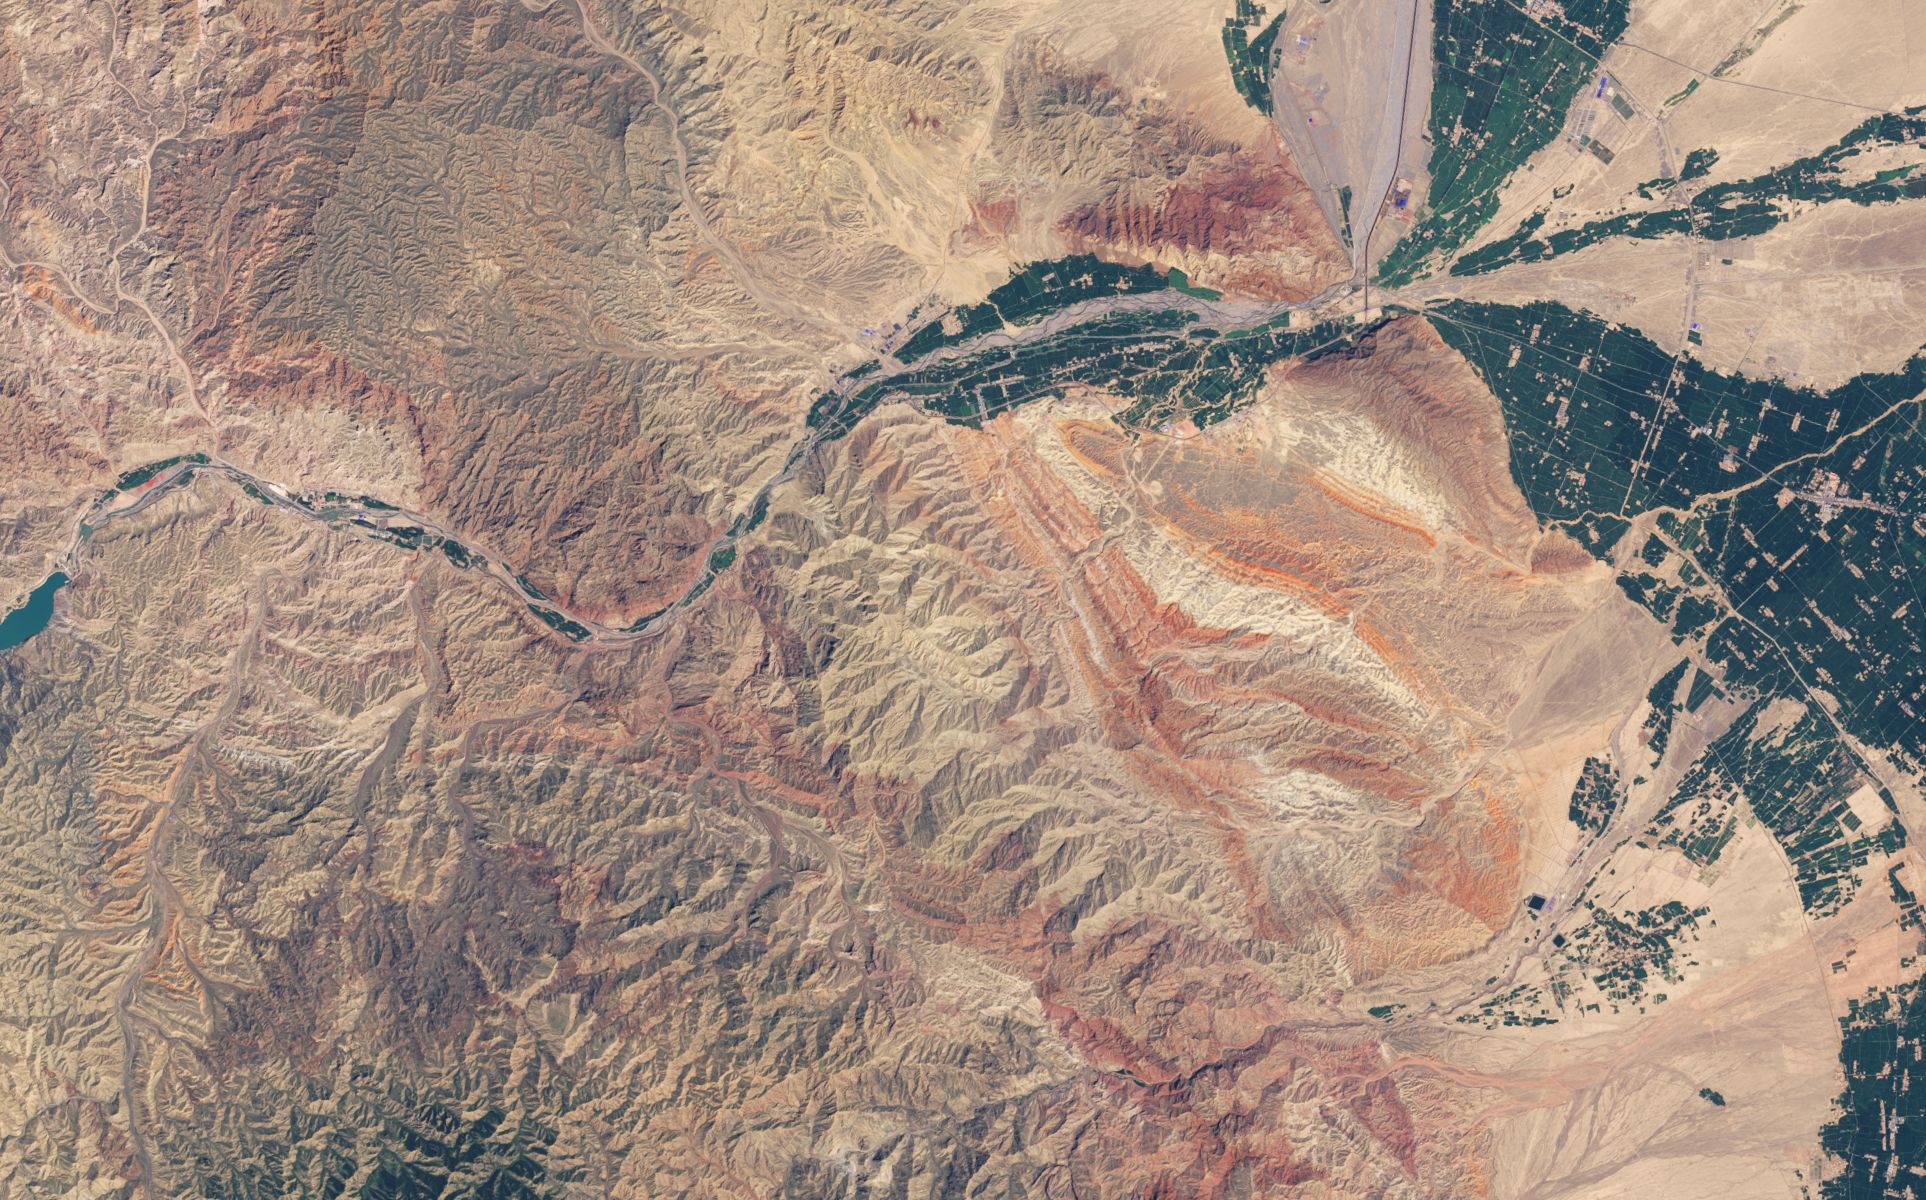 Les reliefs colorés de la région de Zhangye Danxia en Chine vus par le satellite Landsat 8